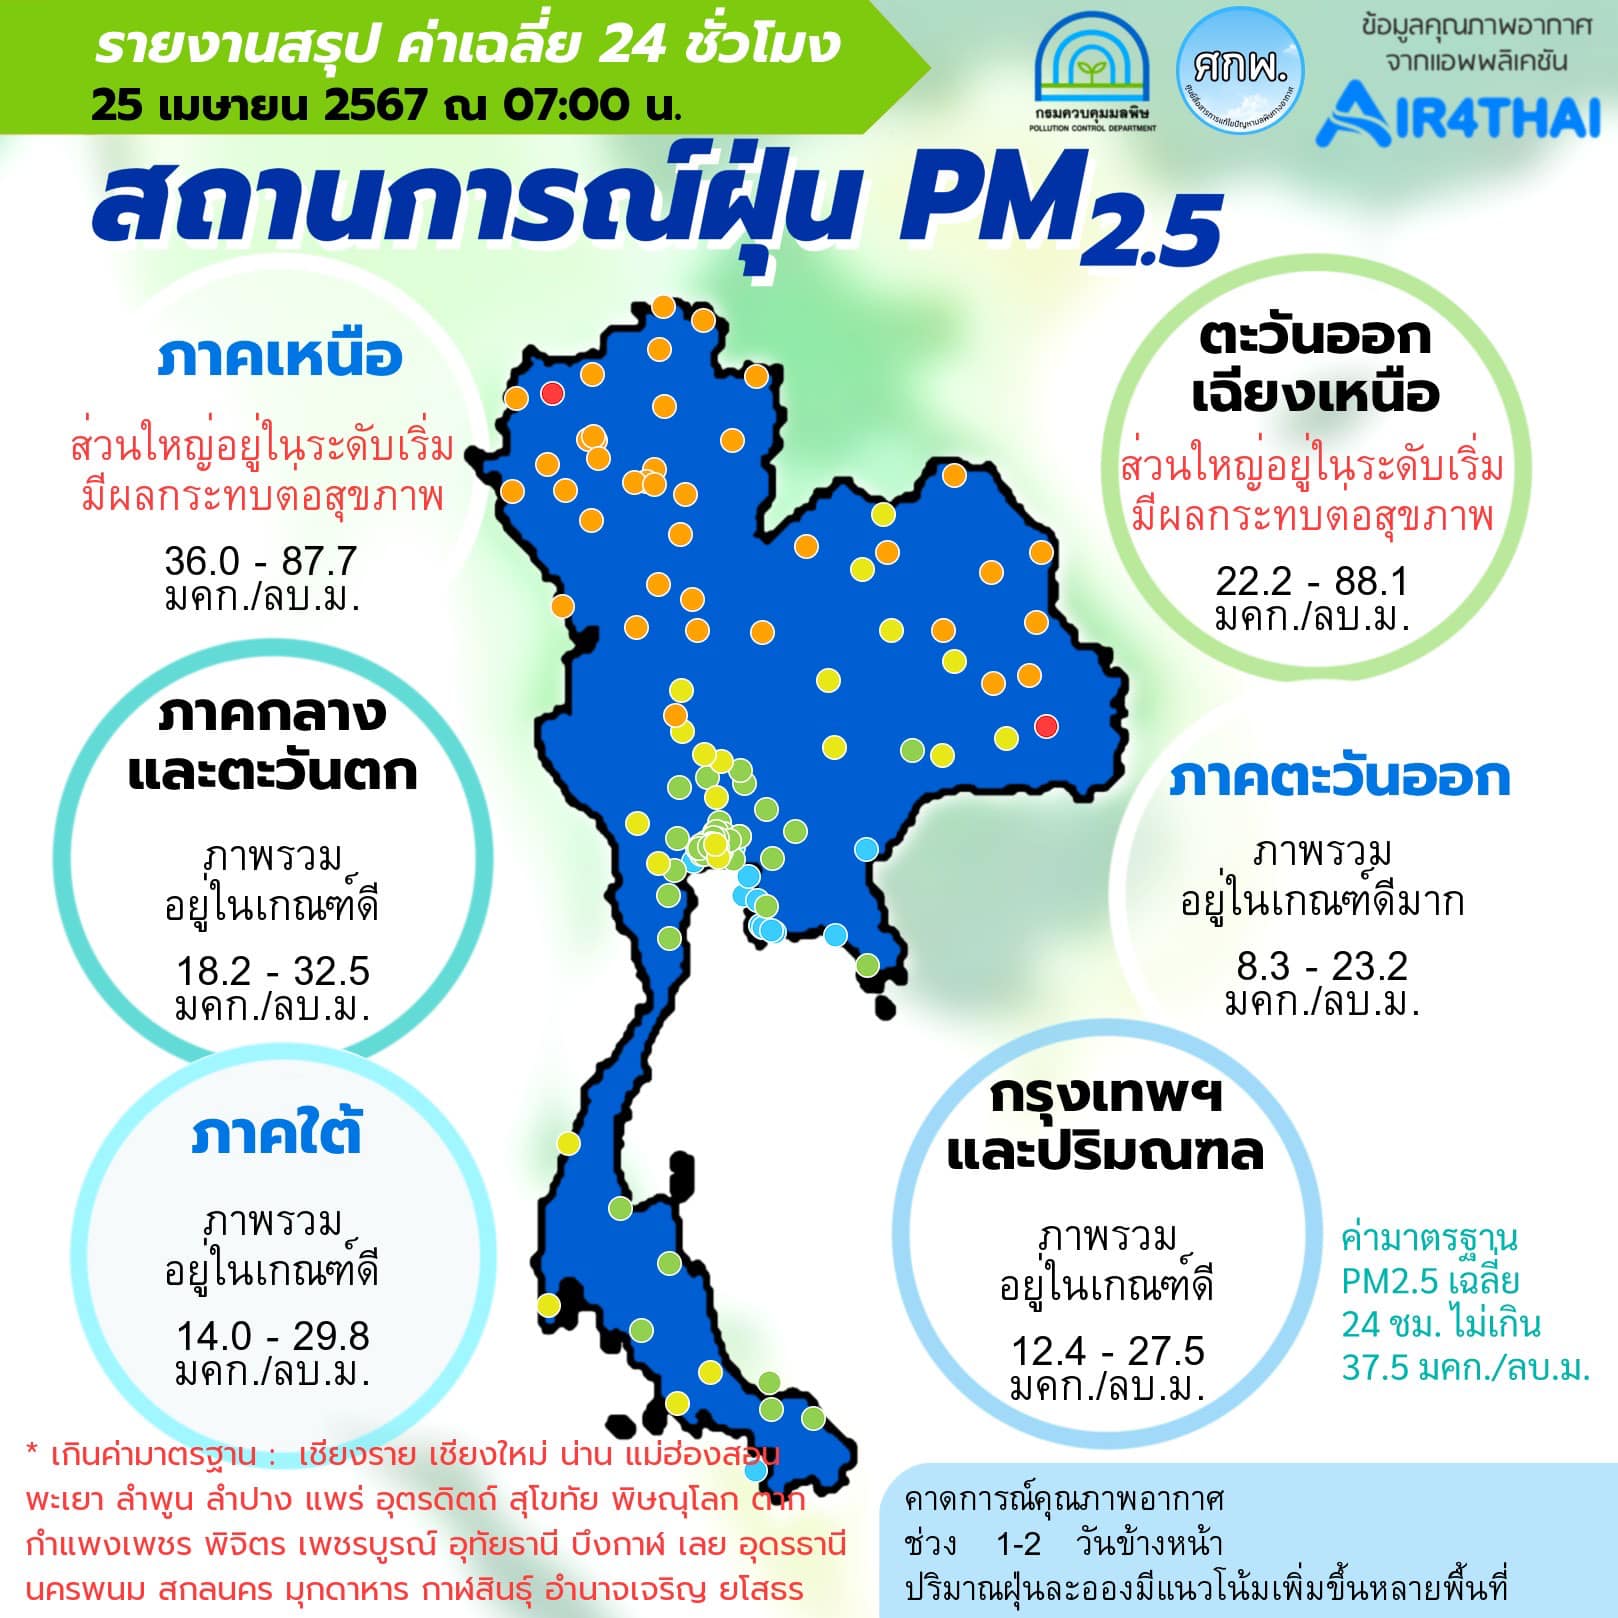 ศูนย์สื่อสารการแก้ไขปัญหามลพิษทางอากาศ รายงานการติดตามตรวจสอบคุณภาพอากาศ ประจำวันที่ 25 เมษายน 2567 ณ 07:00 น 